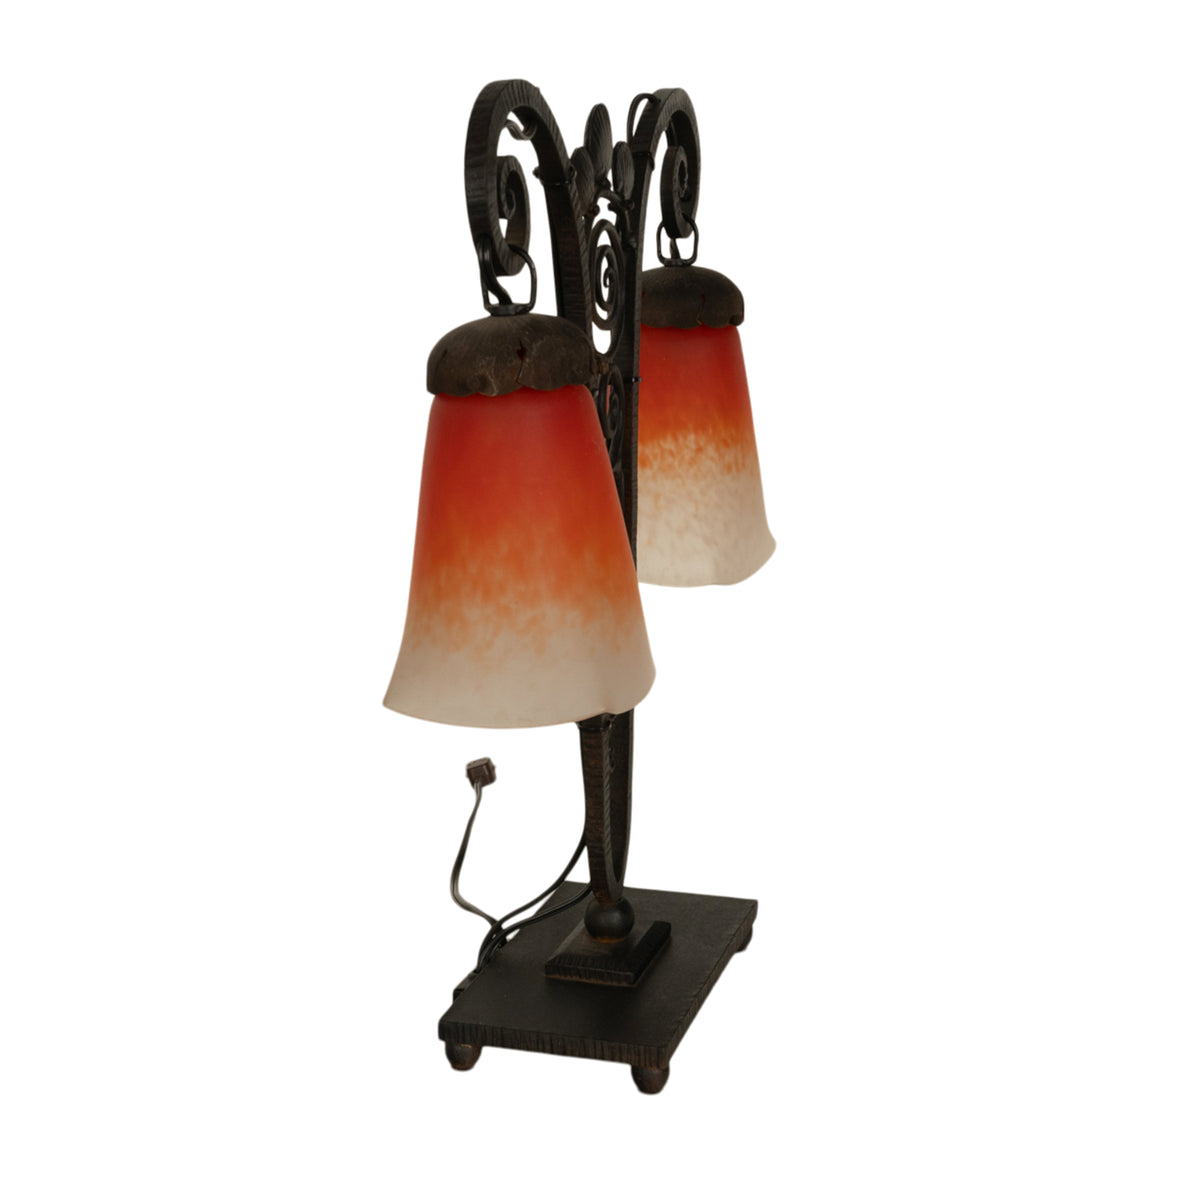 Antique French Art Deco Charles Schneider Art Glass Edgar Brandt Iron Lamp 1920